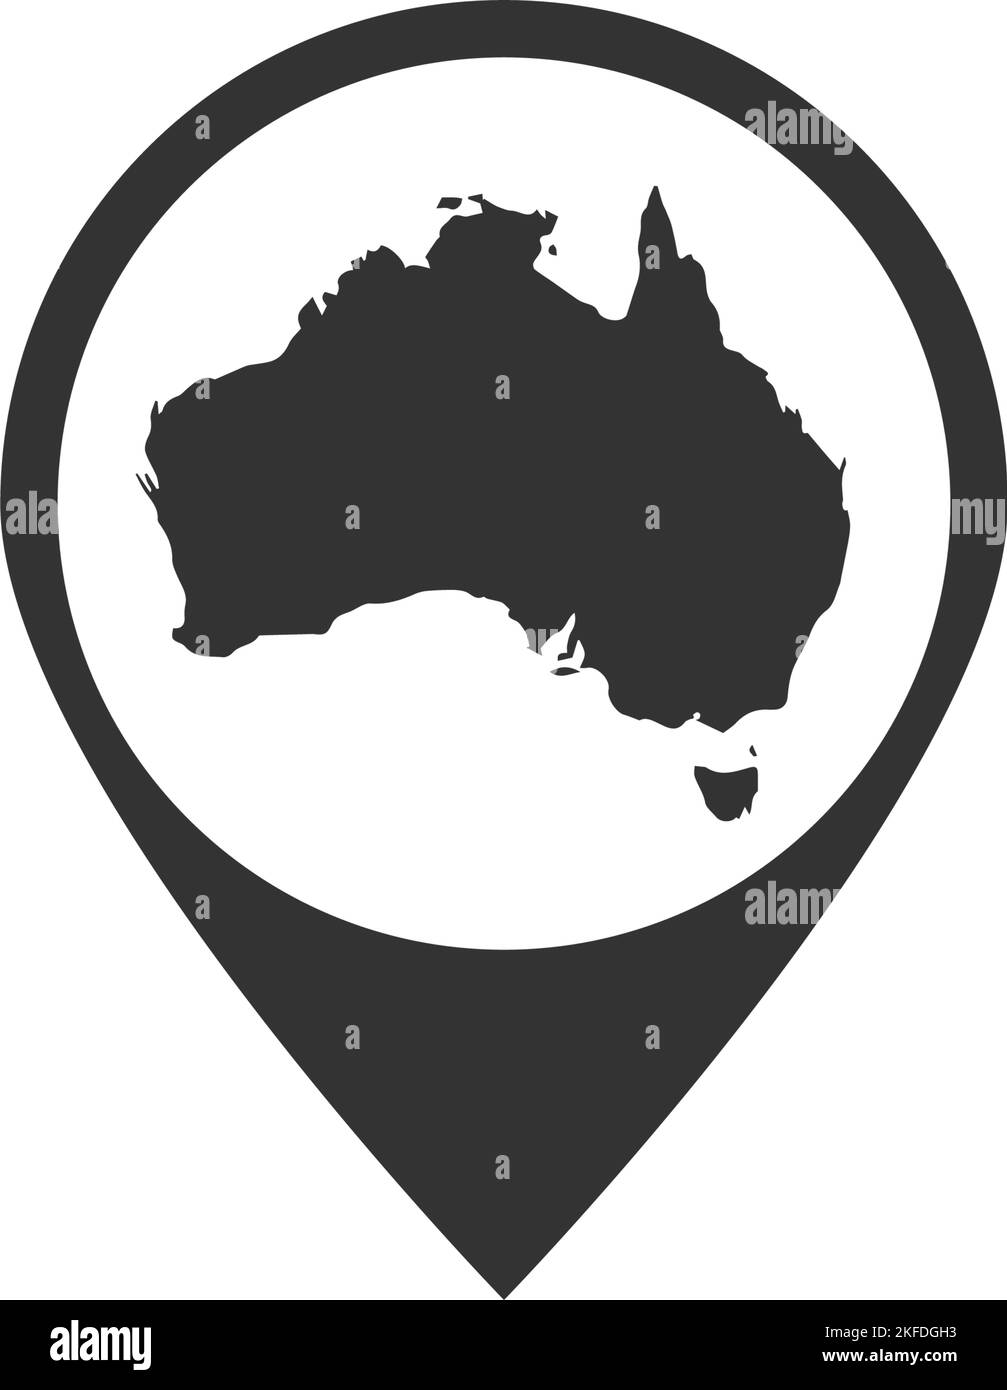 Un contour noir de la carte australienne à l'intérieur d'une broche de localisation isolée sur un fond blanc Illustration de Vecteur